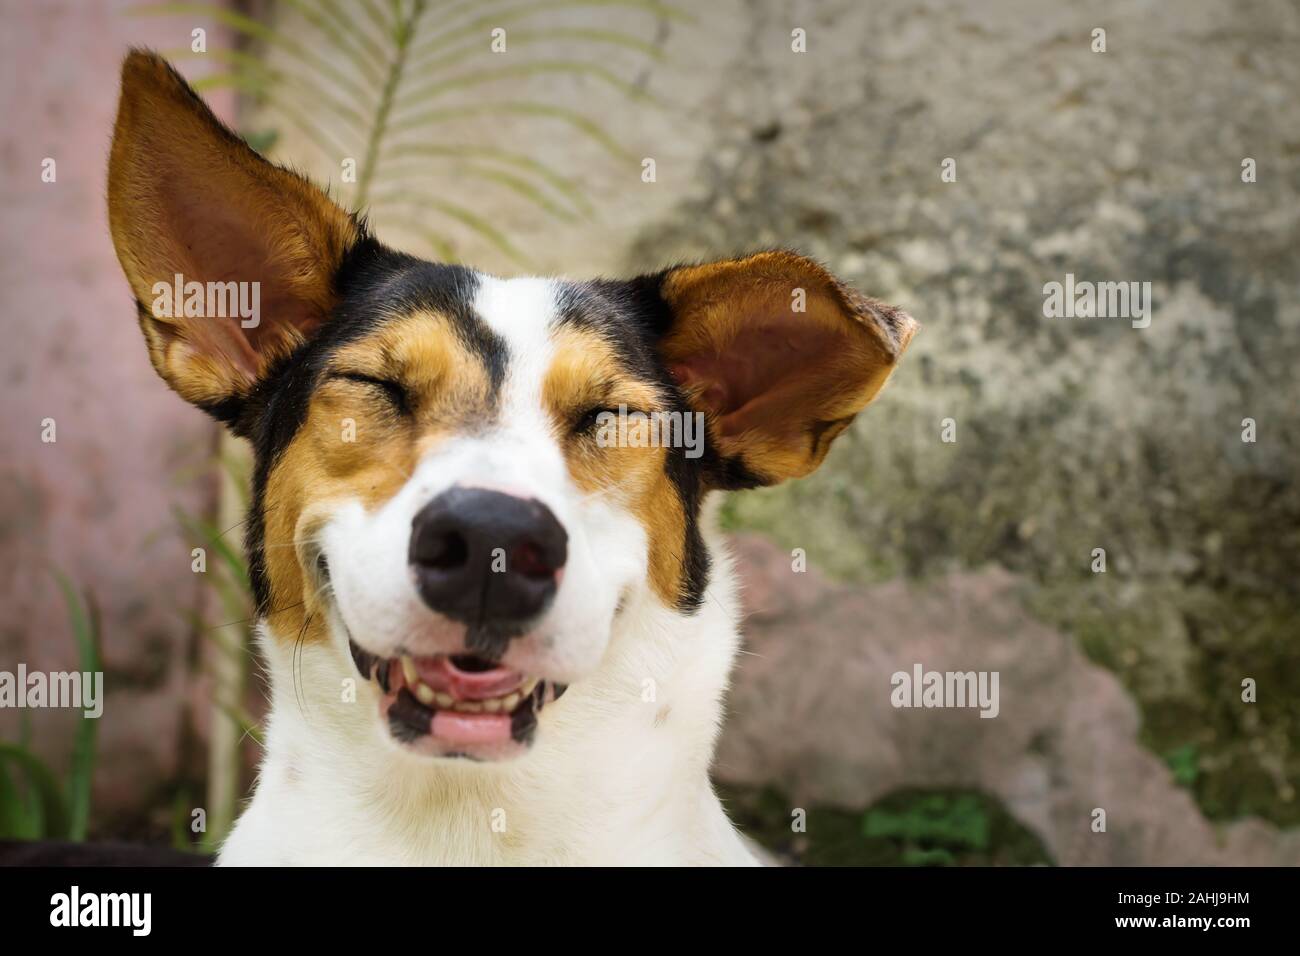 Rire sourire chien avec les yeux fermés et blanc, orange et points noirs se  trouvant dans le jardin naturel Photo Stock - Alamy